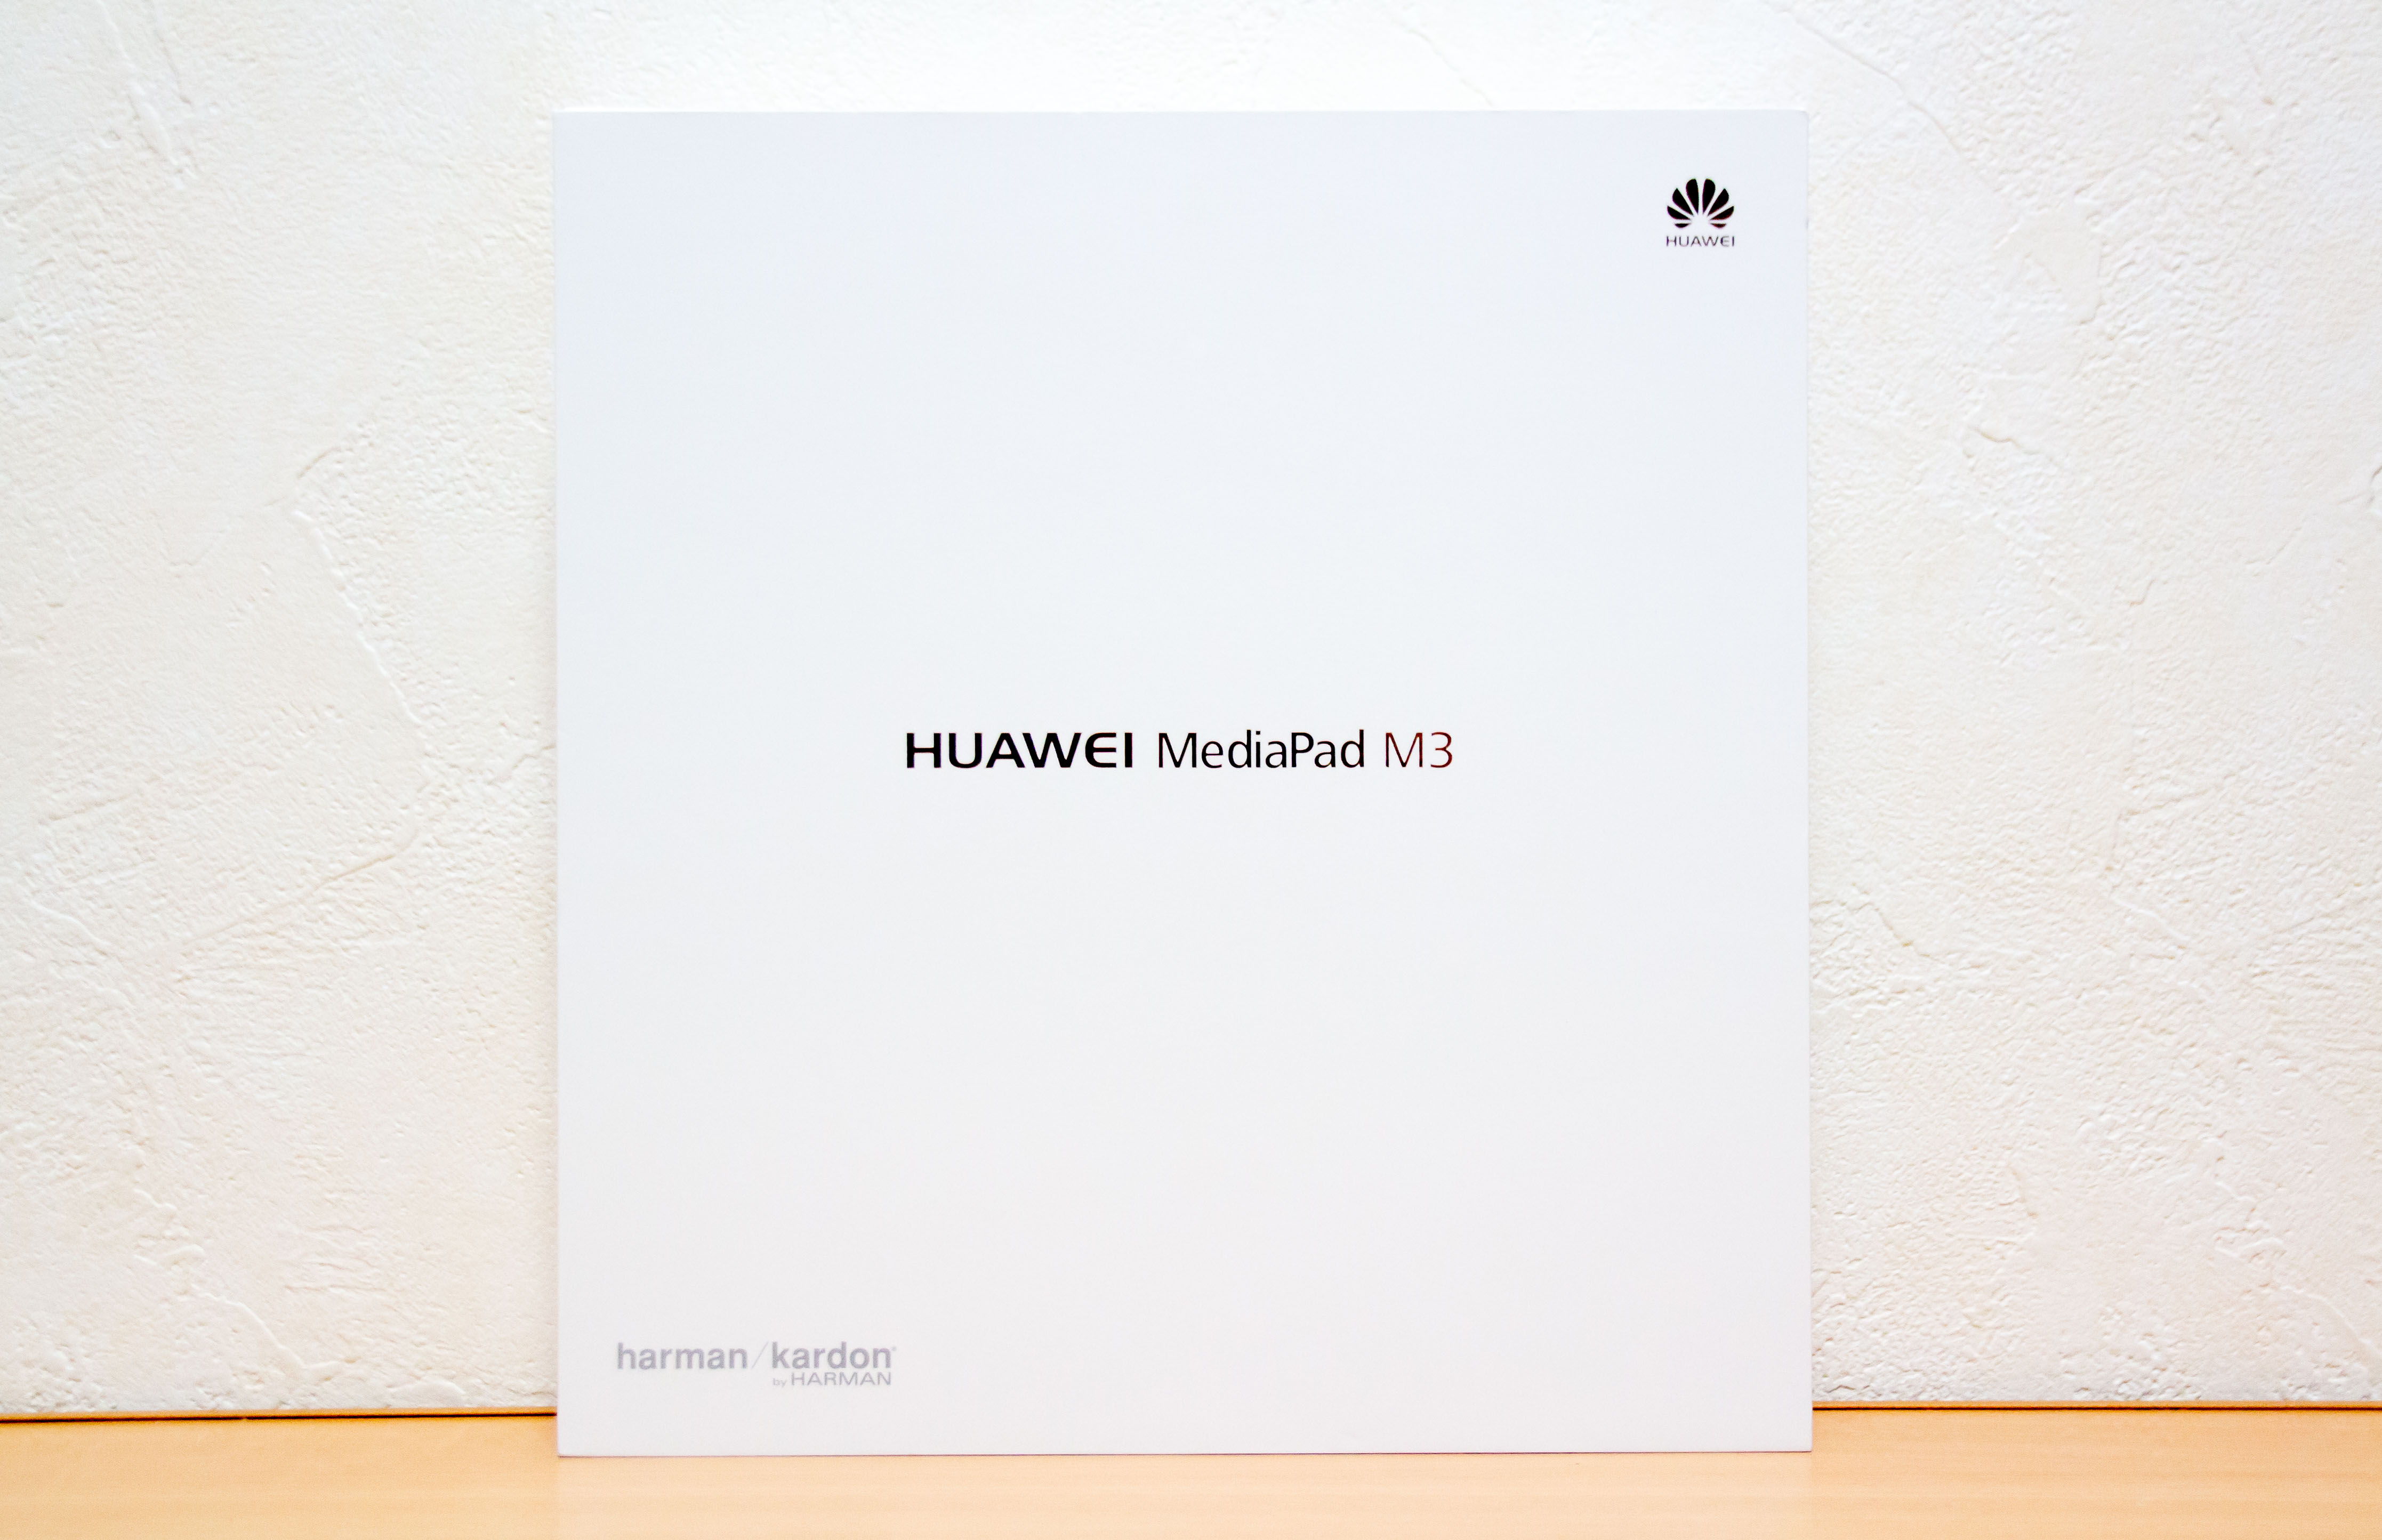 8インチタブレットならこれ一択。HUAWEI MediaPad M3のコスパが高過ぎて頭おかしくなりそう | Time to live forever